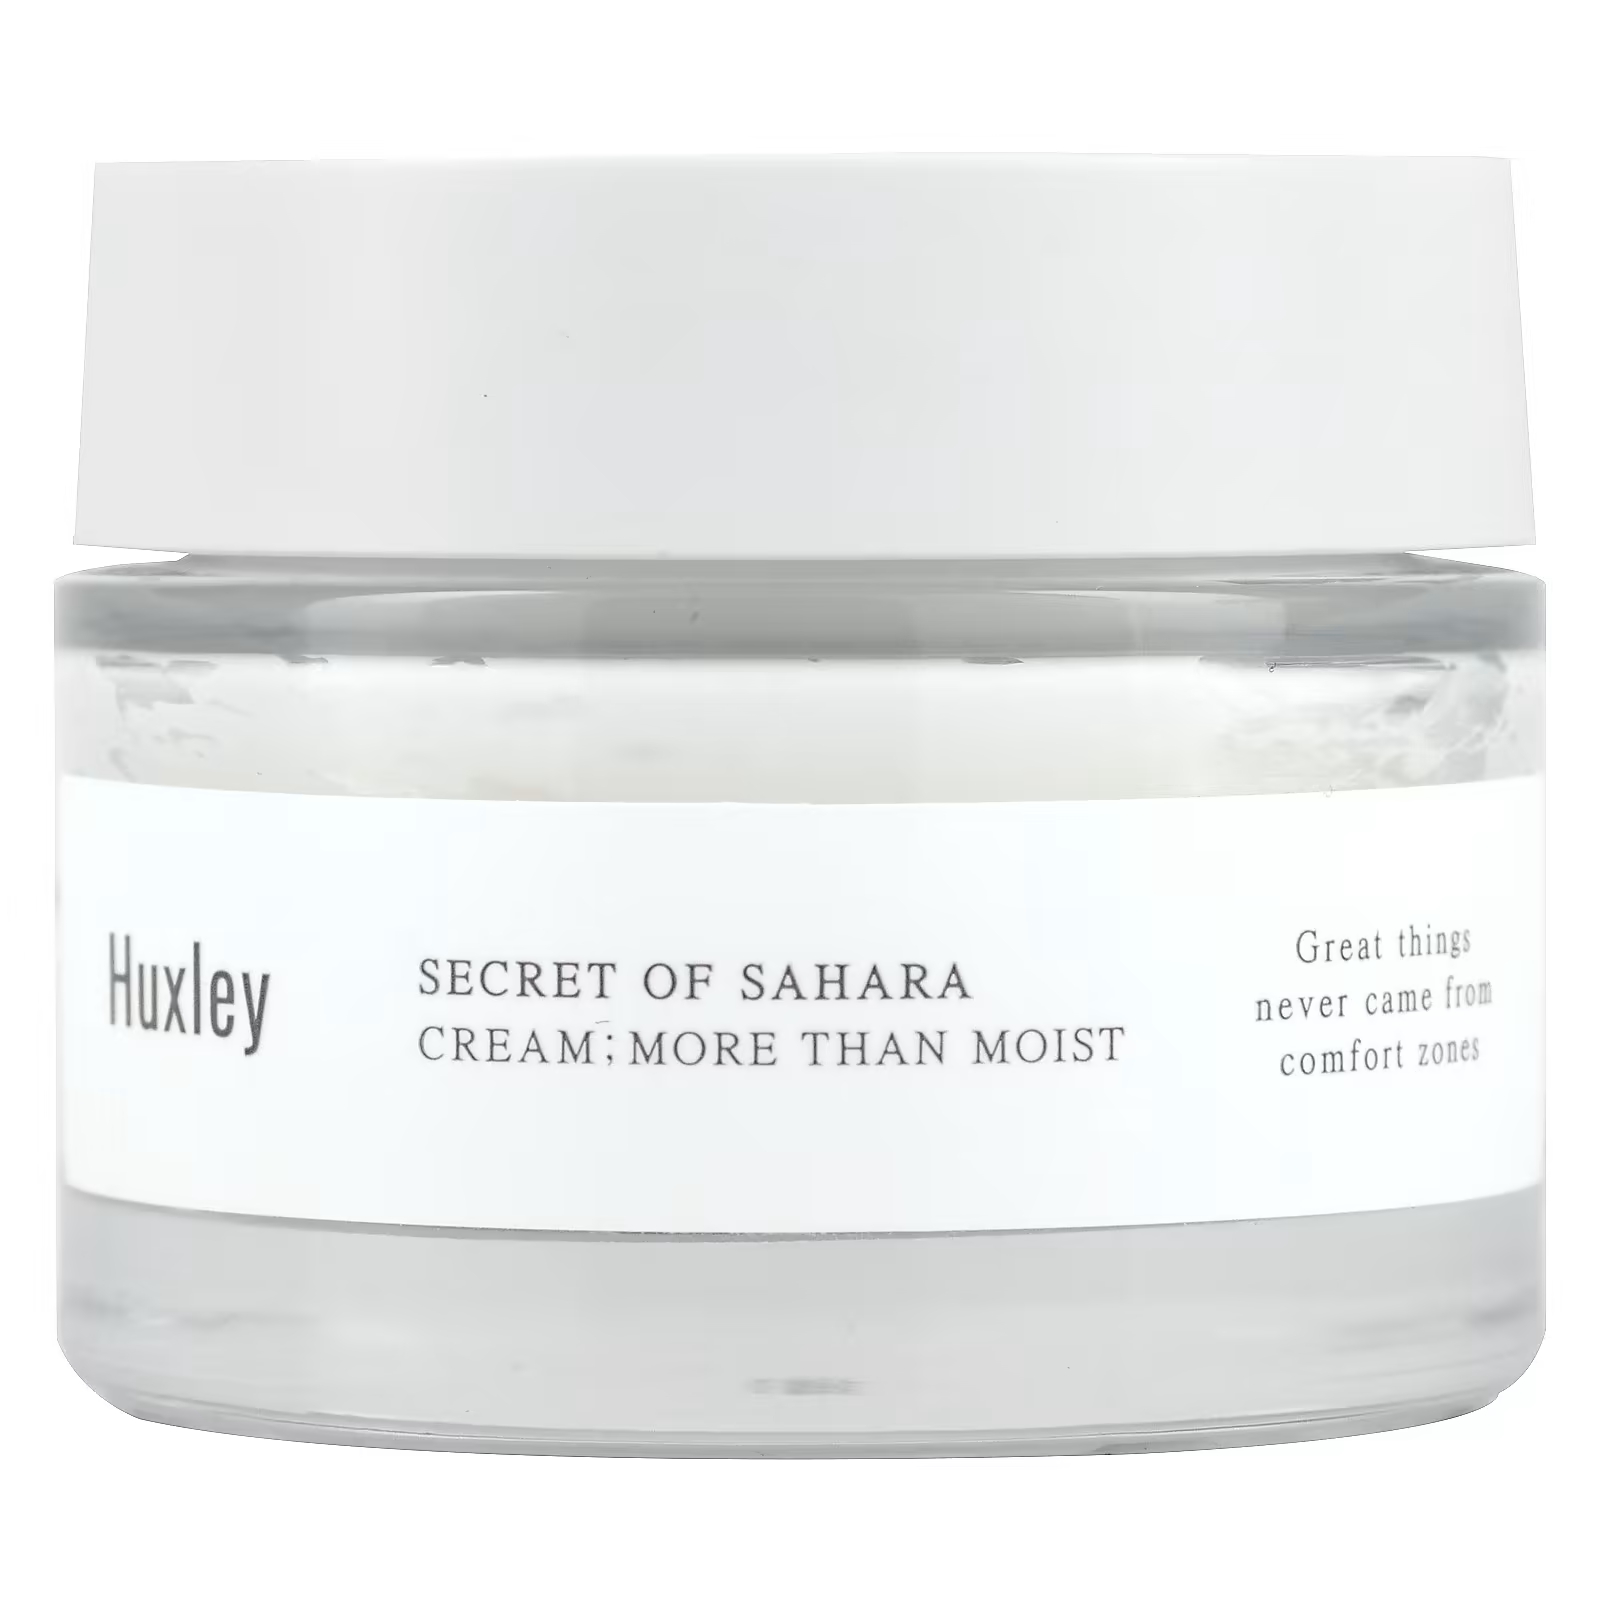 цена Крем Huxley Secret of Sahara More Than Moist, 50 мл